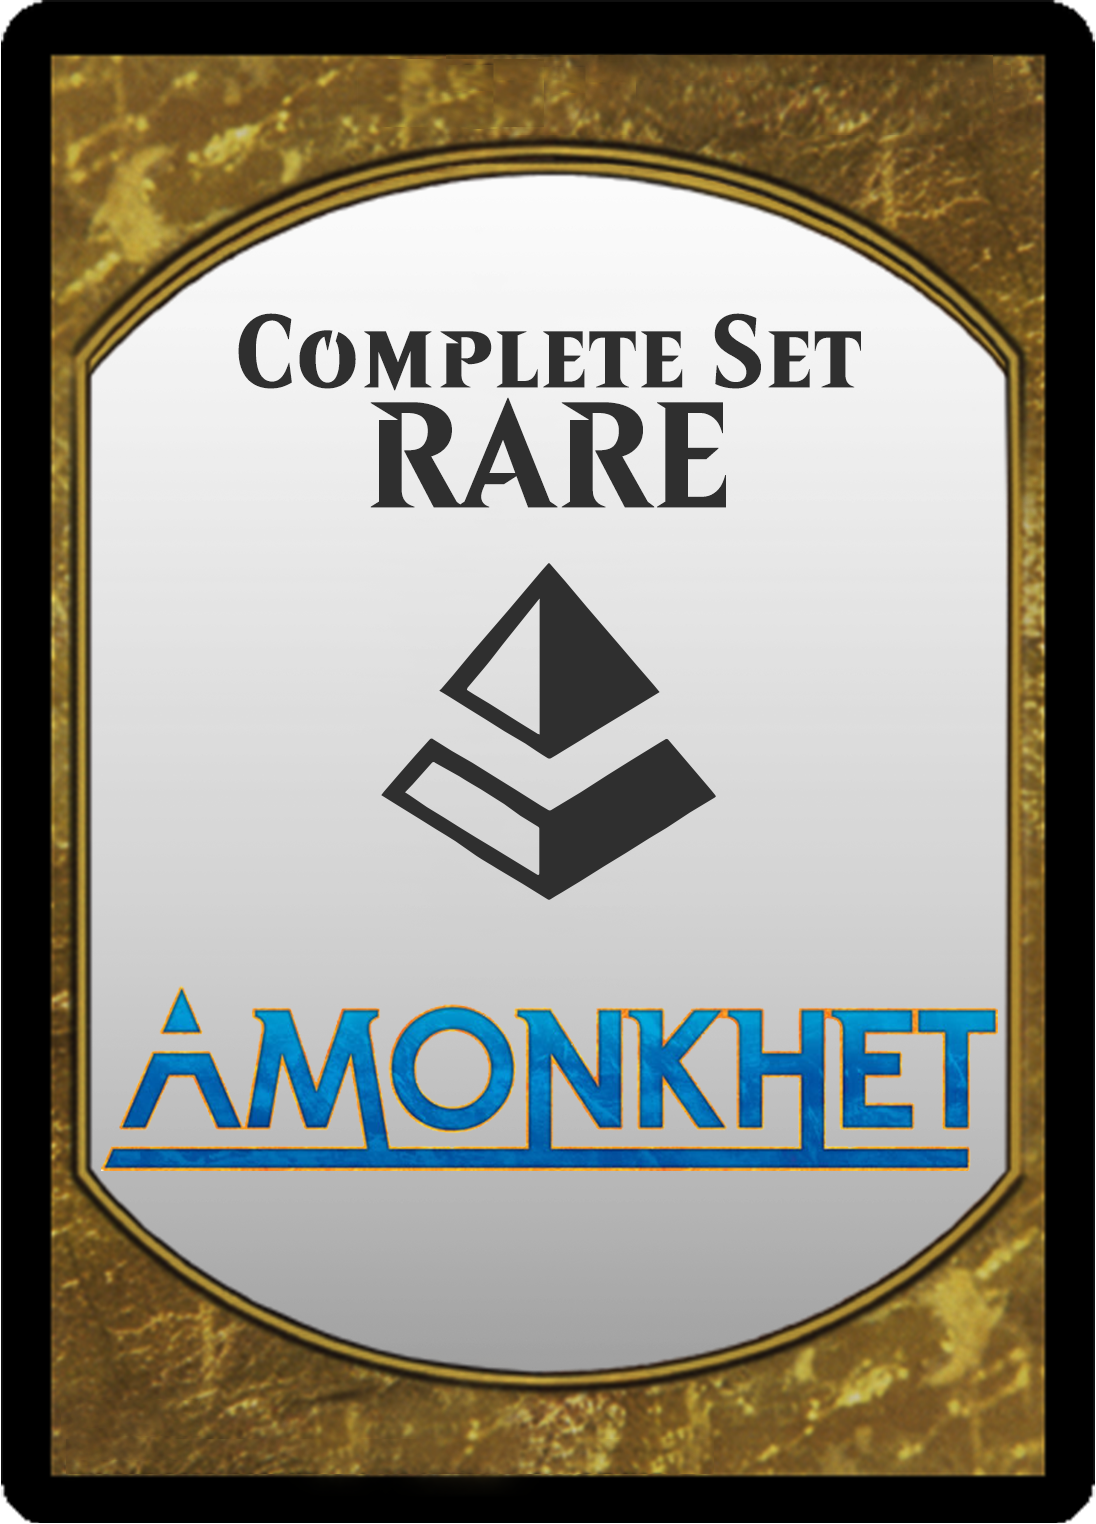 Amonkhet Rare Set